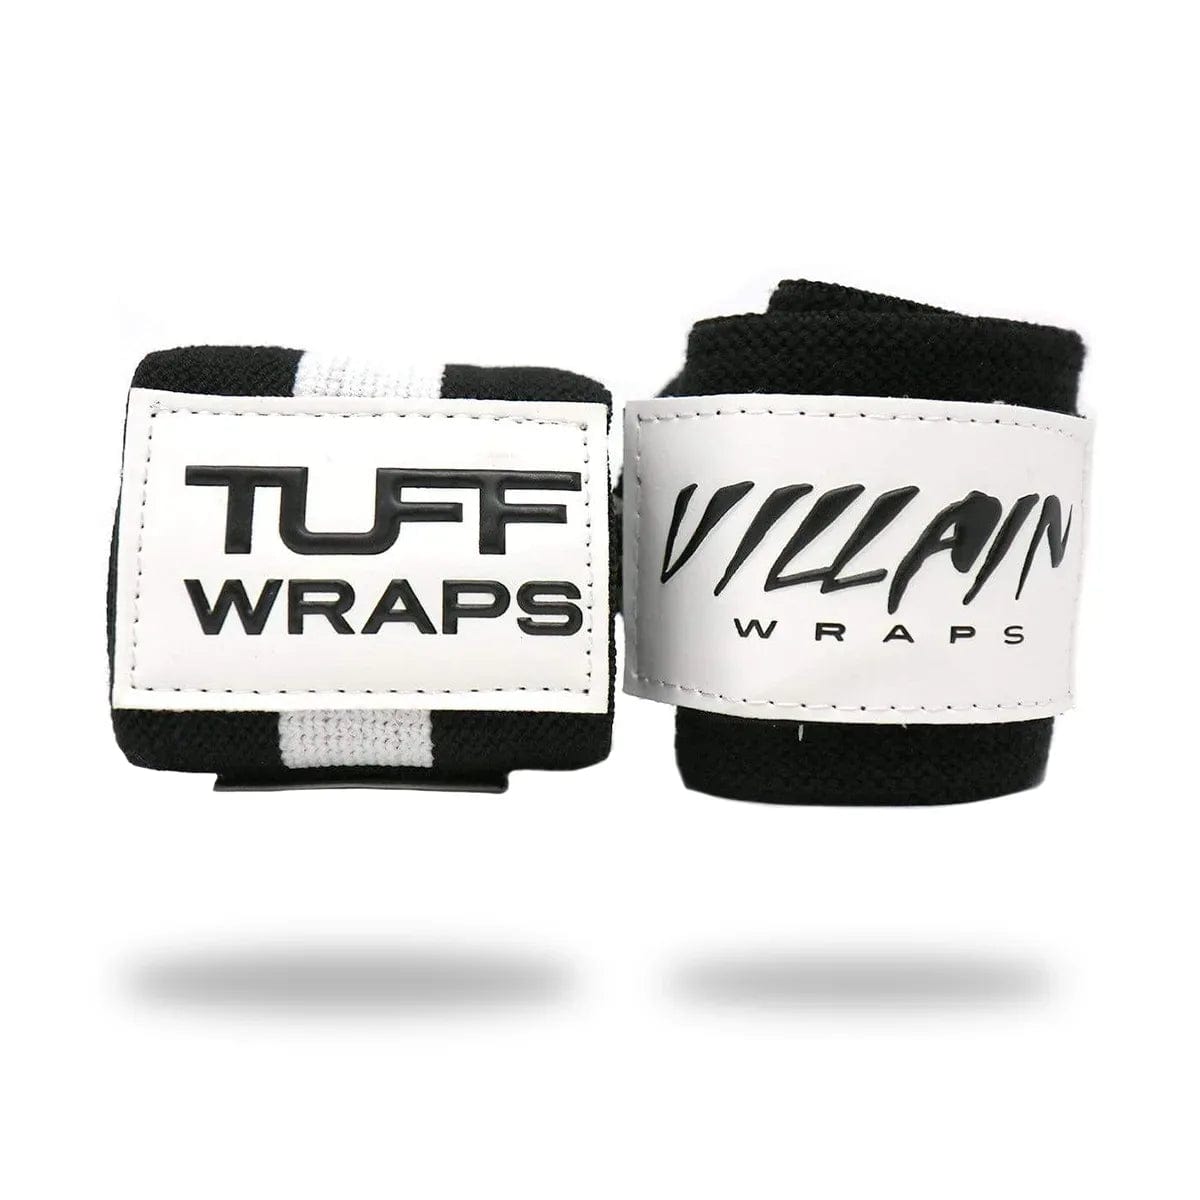 30" Villain Wrist Wraps - Black & White TuffWraps.com